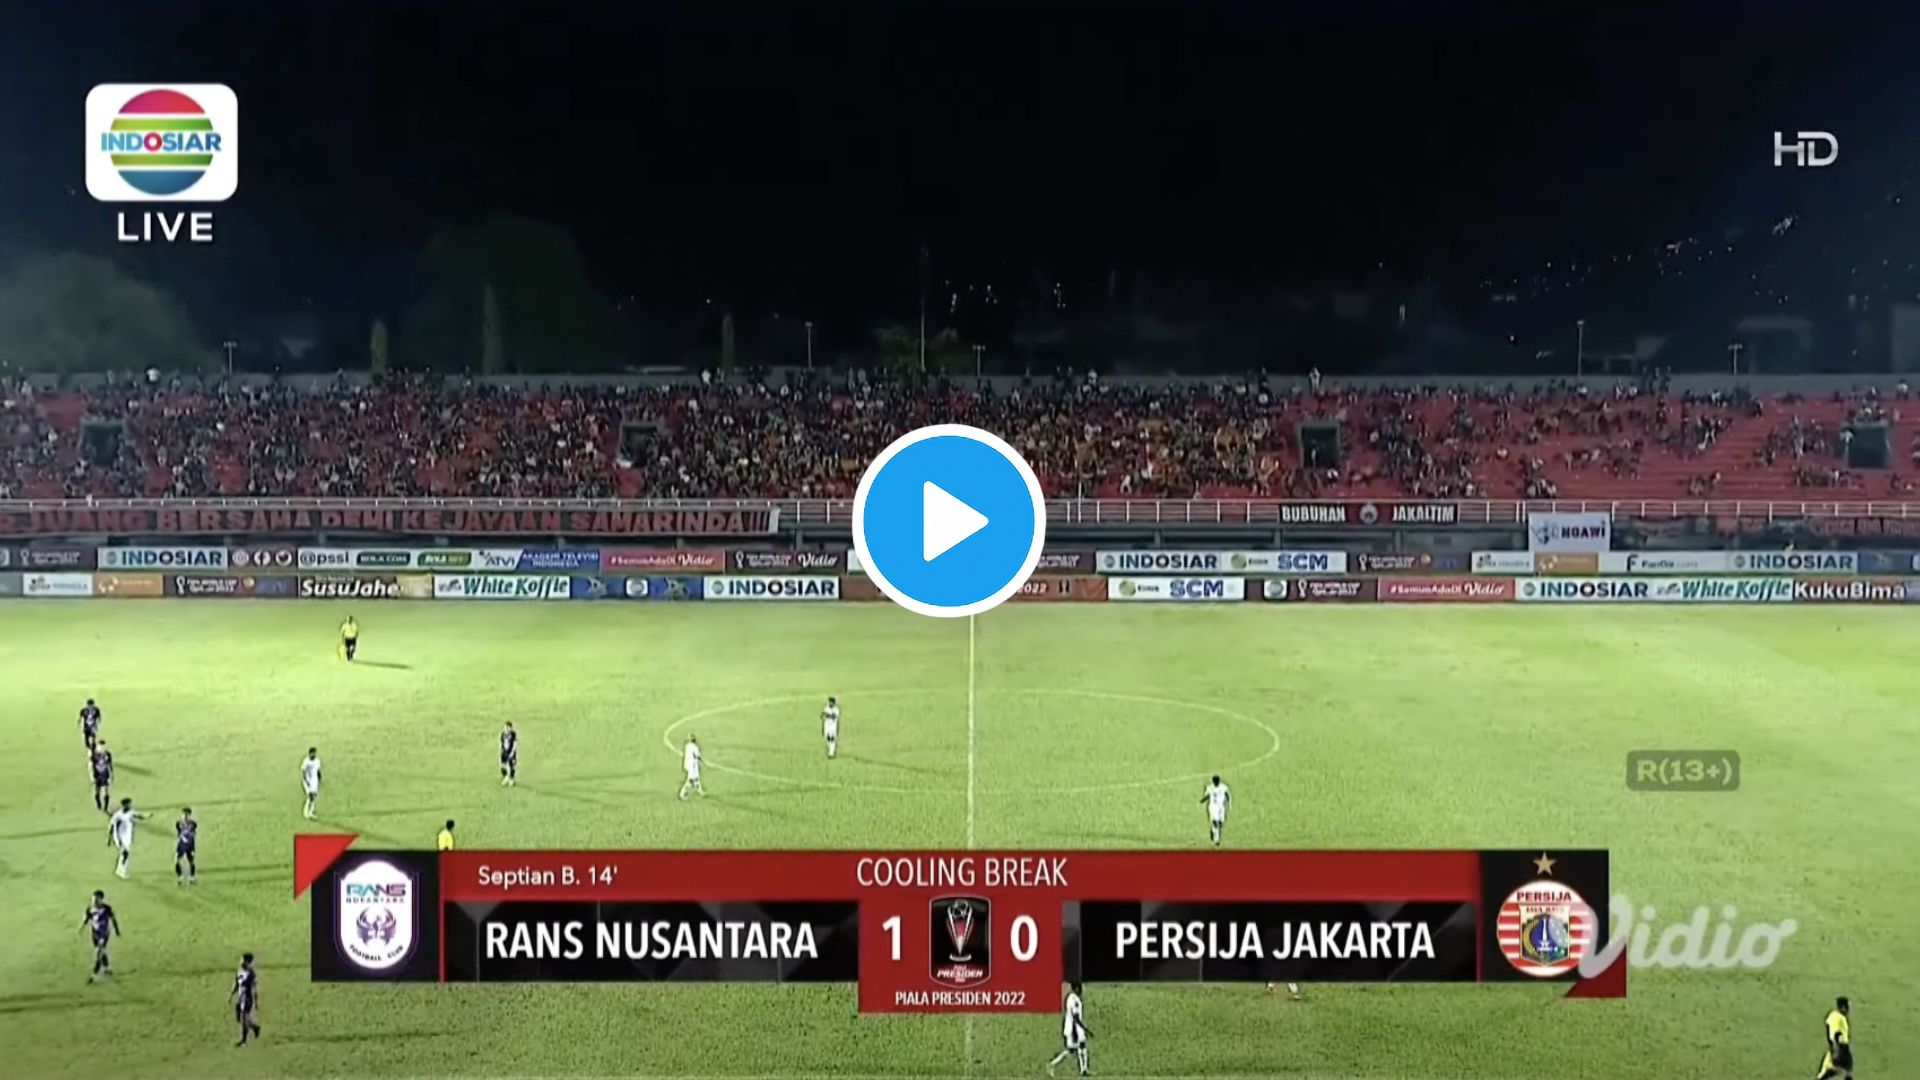 UPDATE HASIL Akhir Skor Rans Nusantara vs Persija Jakarta Malam Ini Rabu 22 Juni 2022: Skor 5 - 1